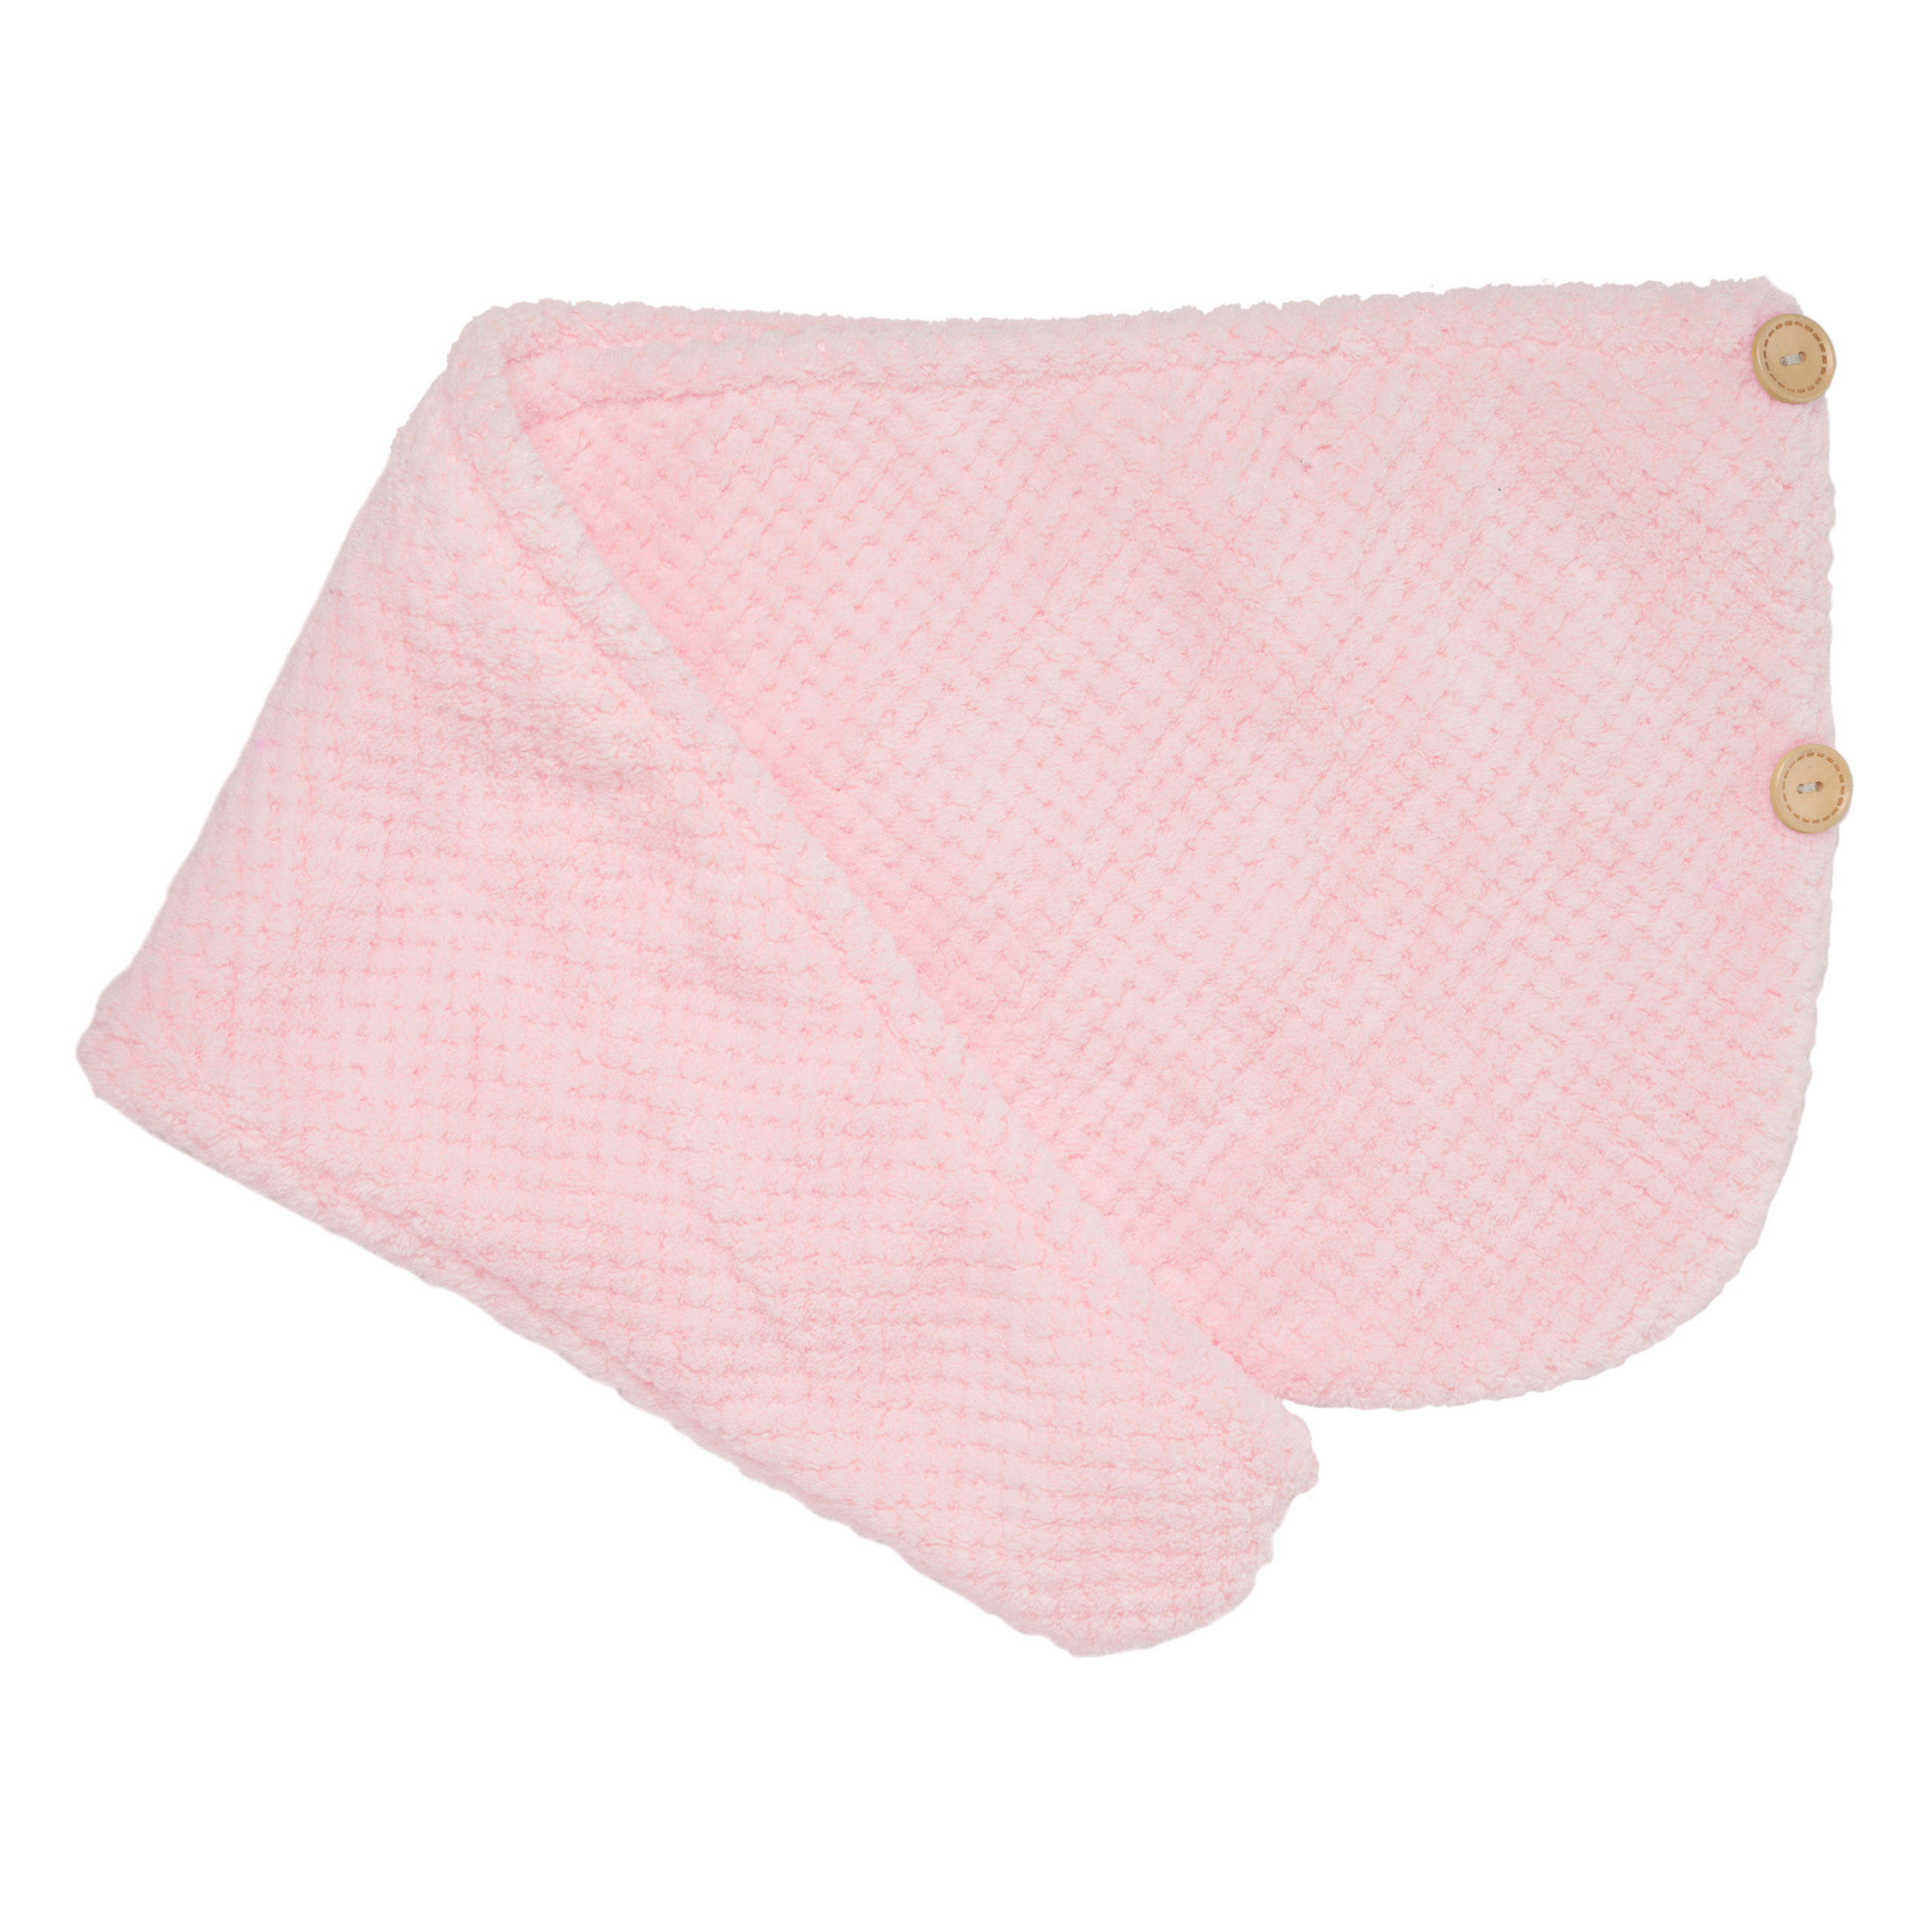 Полотенце-тюрбан для волос, 62х24 см, микроволокно, розовое, Fiber spa изображение № 2